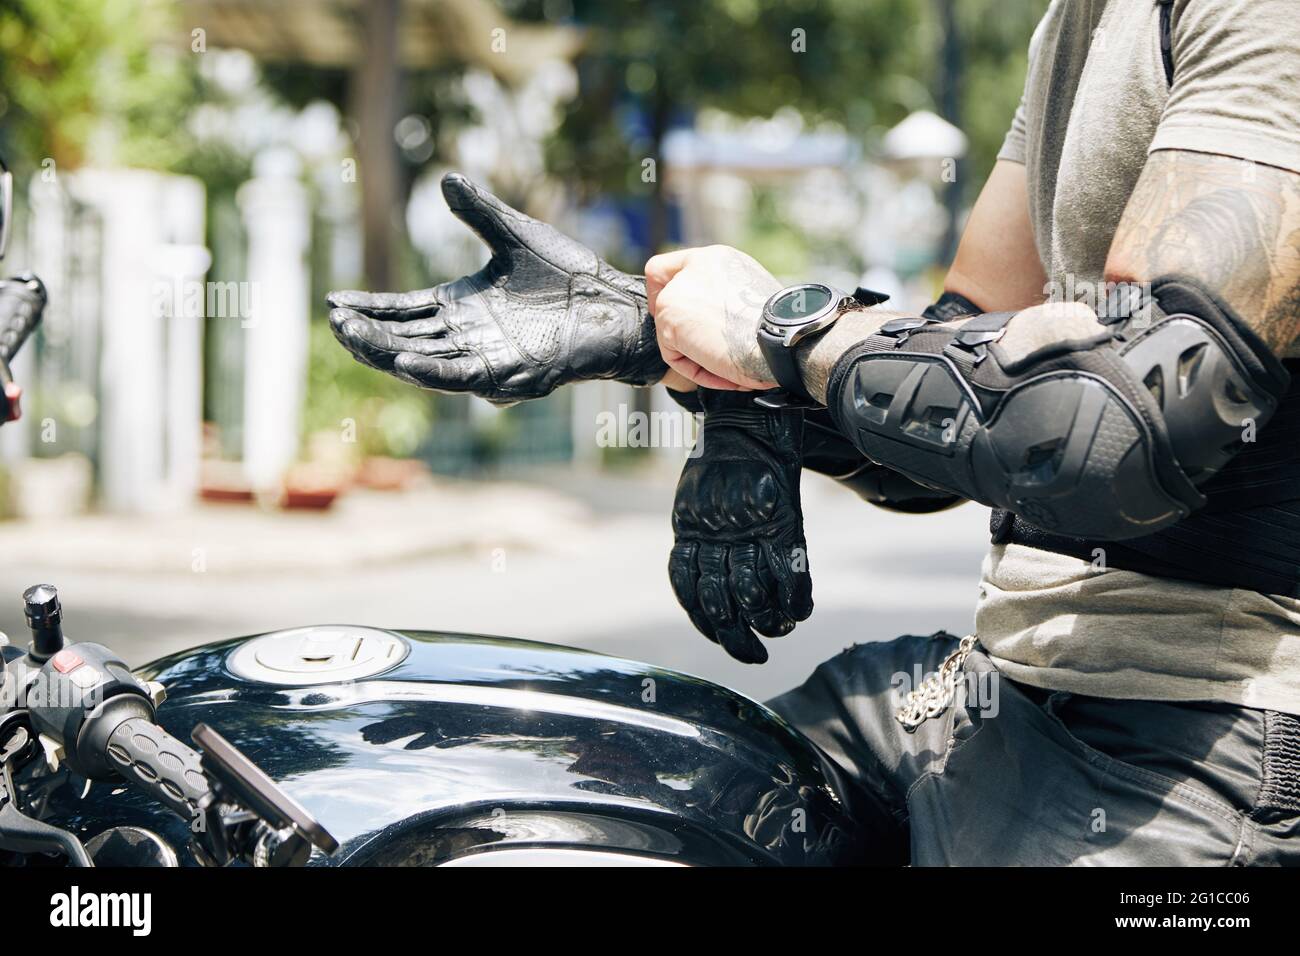 Hände von Motorradfahrern, die auf dem Fahrrad sitzen und Fahrausrüstung wie Unterarmschützer und Lederhandschuhe anziehen Stockfoto